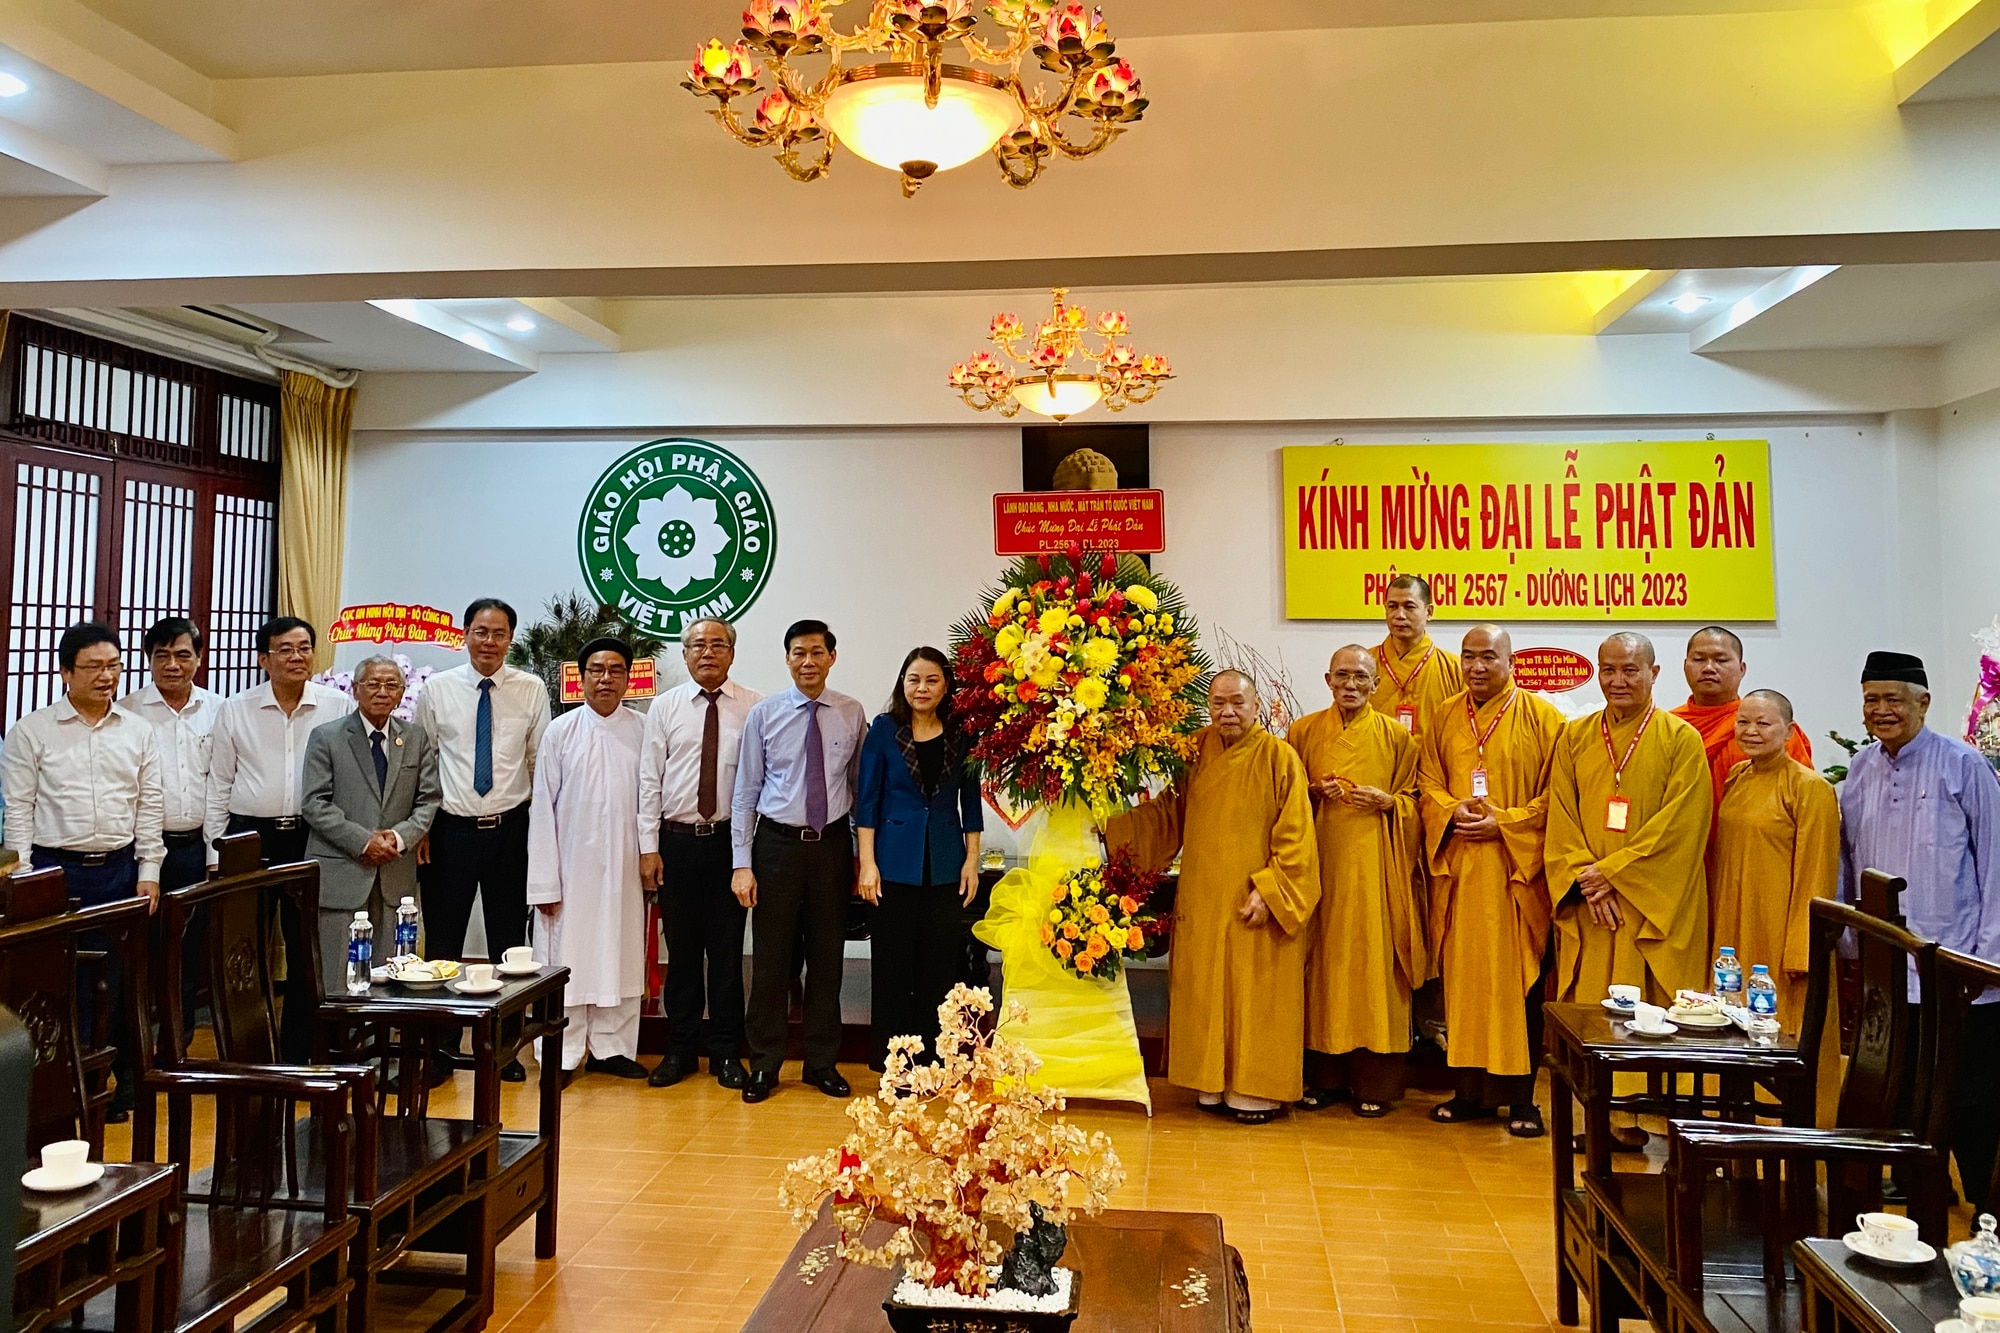 Lãnh đạo Ủy ban T.Ư MTTQ Việt Nam chúc mừng đại lễ Phật đản tại TP.HCM - Ảnh 2.